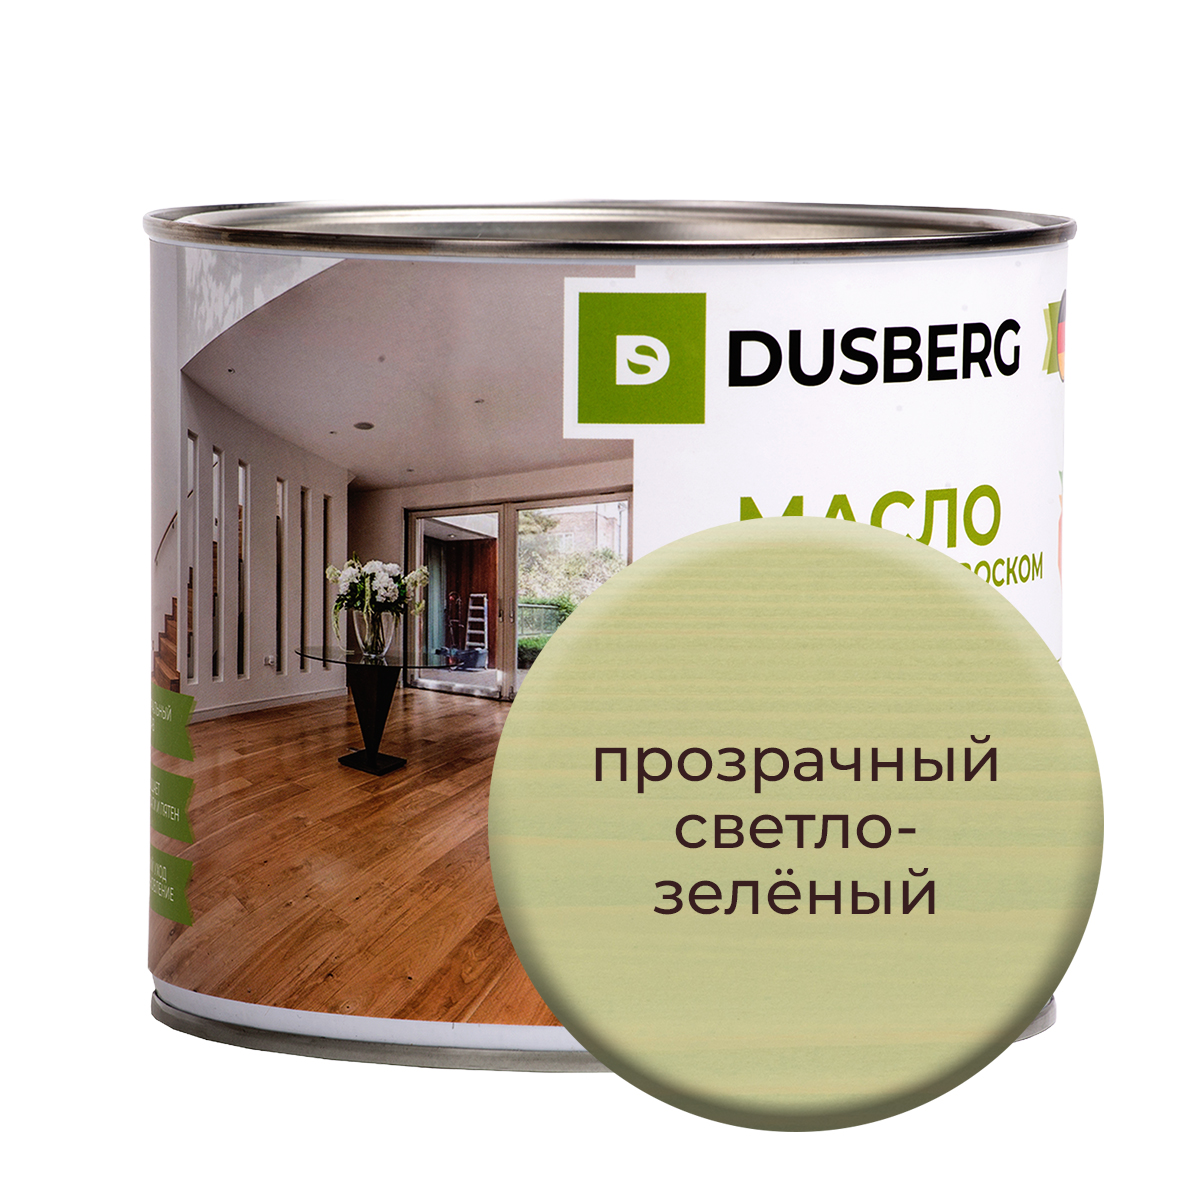 Масло Dusberg с твердым воском на бесцветной основе, 2 л Прозрачный светло-зеленый масло воск для террасной доски brite flexx бес ное банка 2 5 л 212476